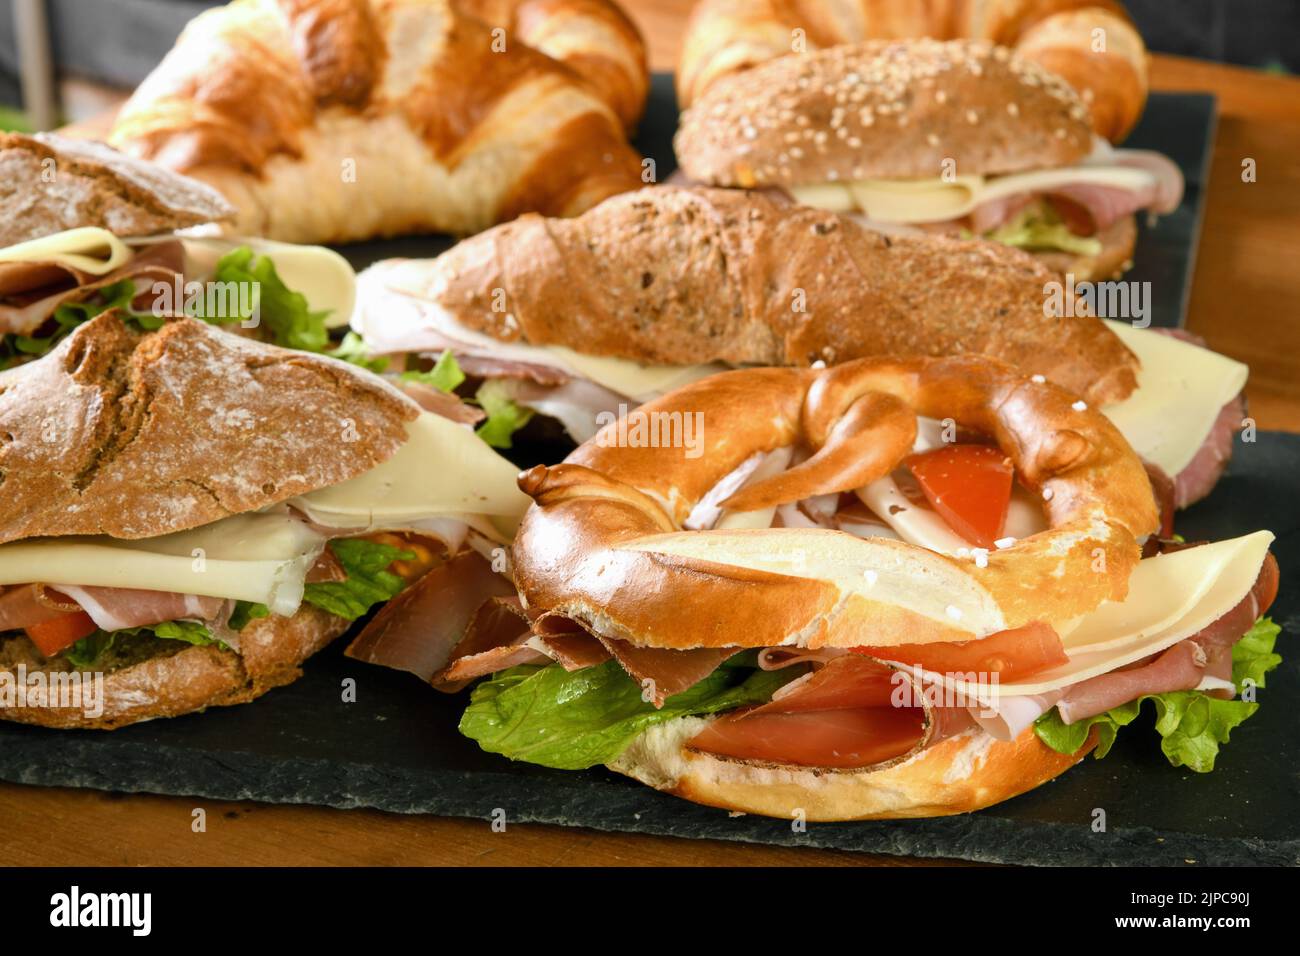 Grand choix de sandwichs appétissants avec fromage au jambon et légumes servis sur des planches d'ardoise sur une table en bois au restaurant Banque D'Images